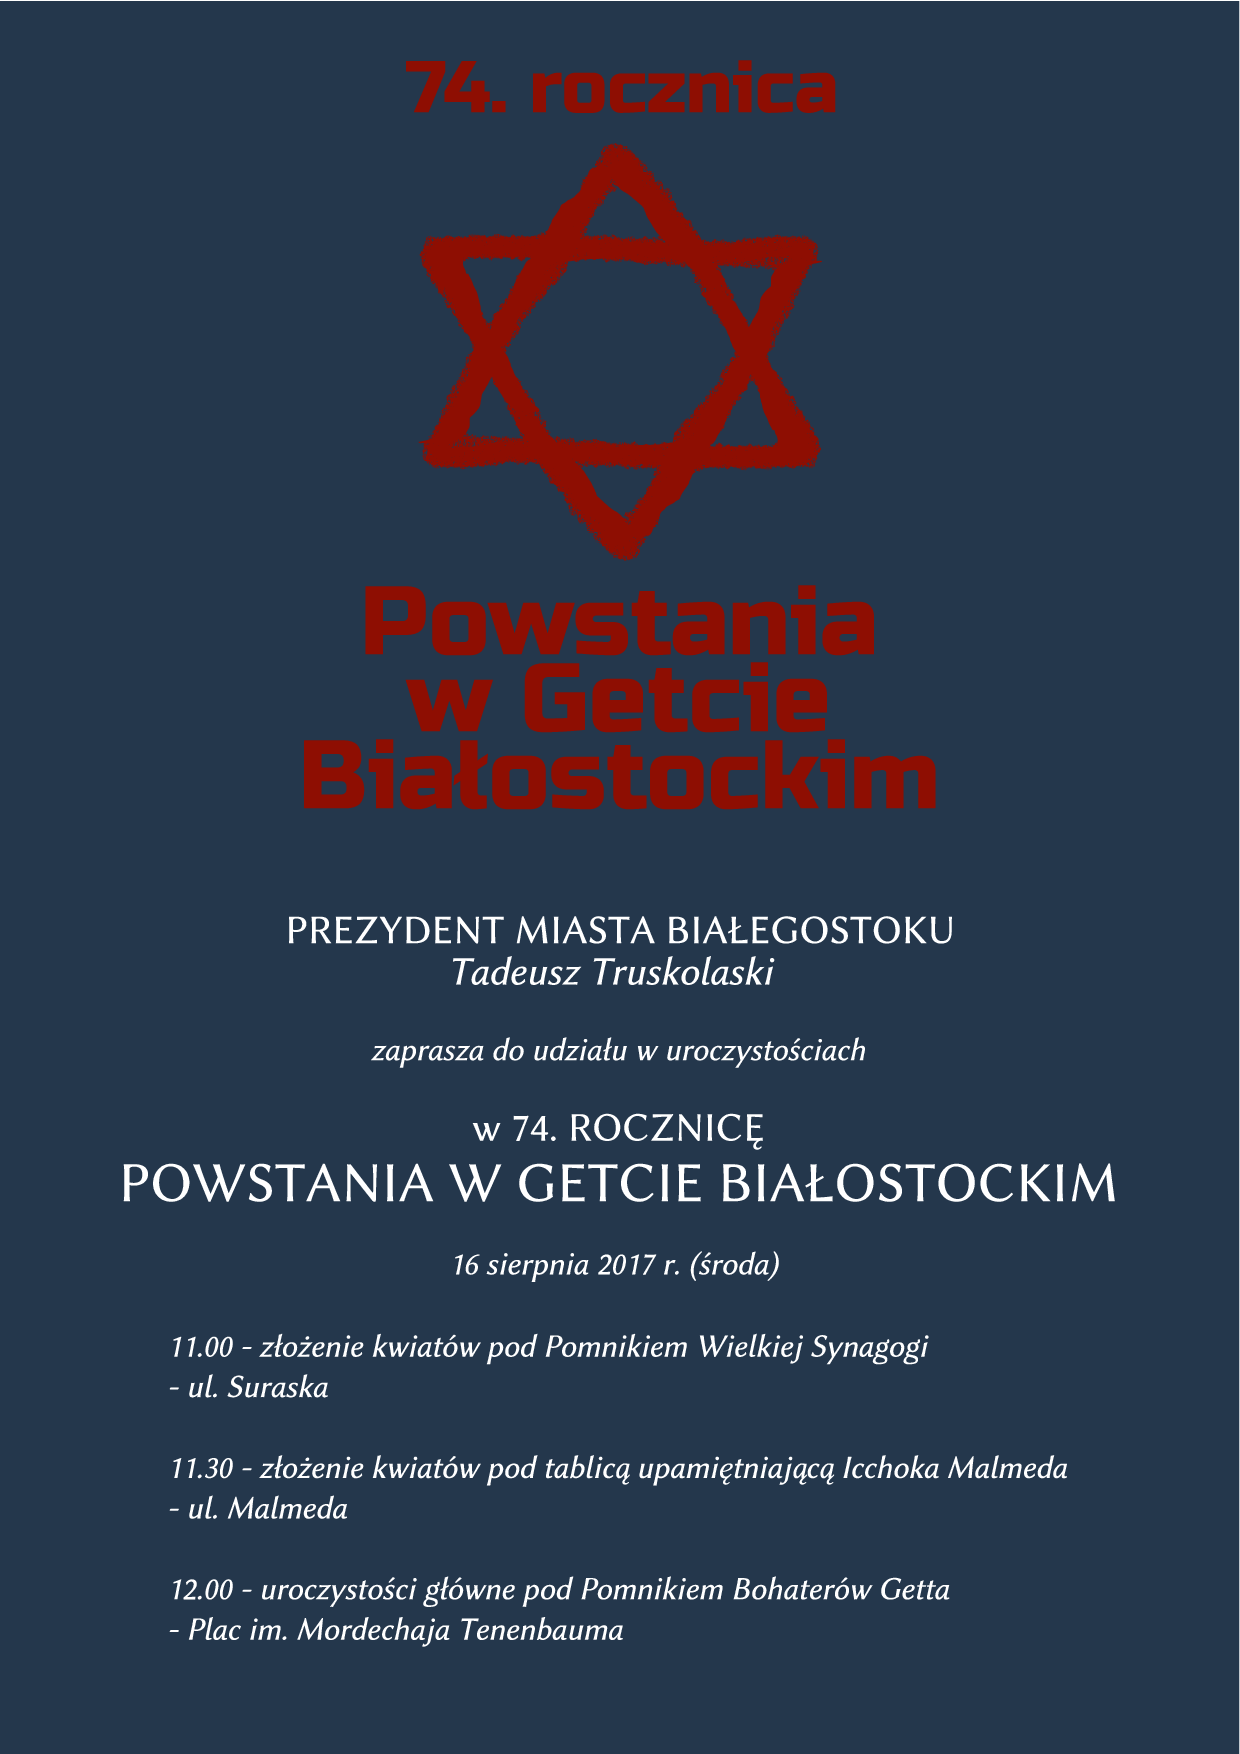 Zaproszenie do udziału w uroczystościach w 74. rocznicę Powstania w Getcie Białostockim